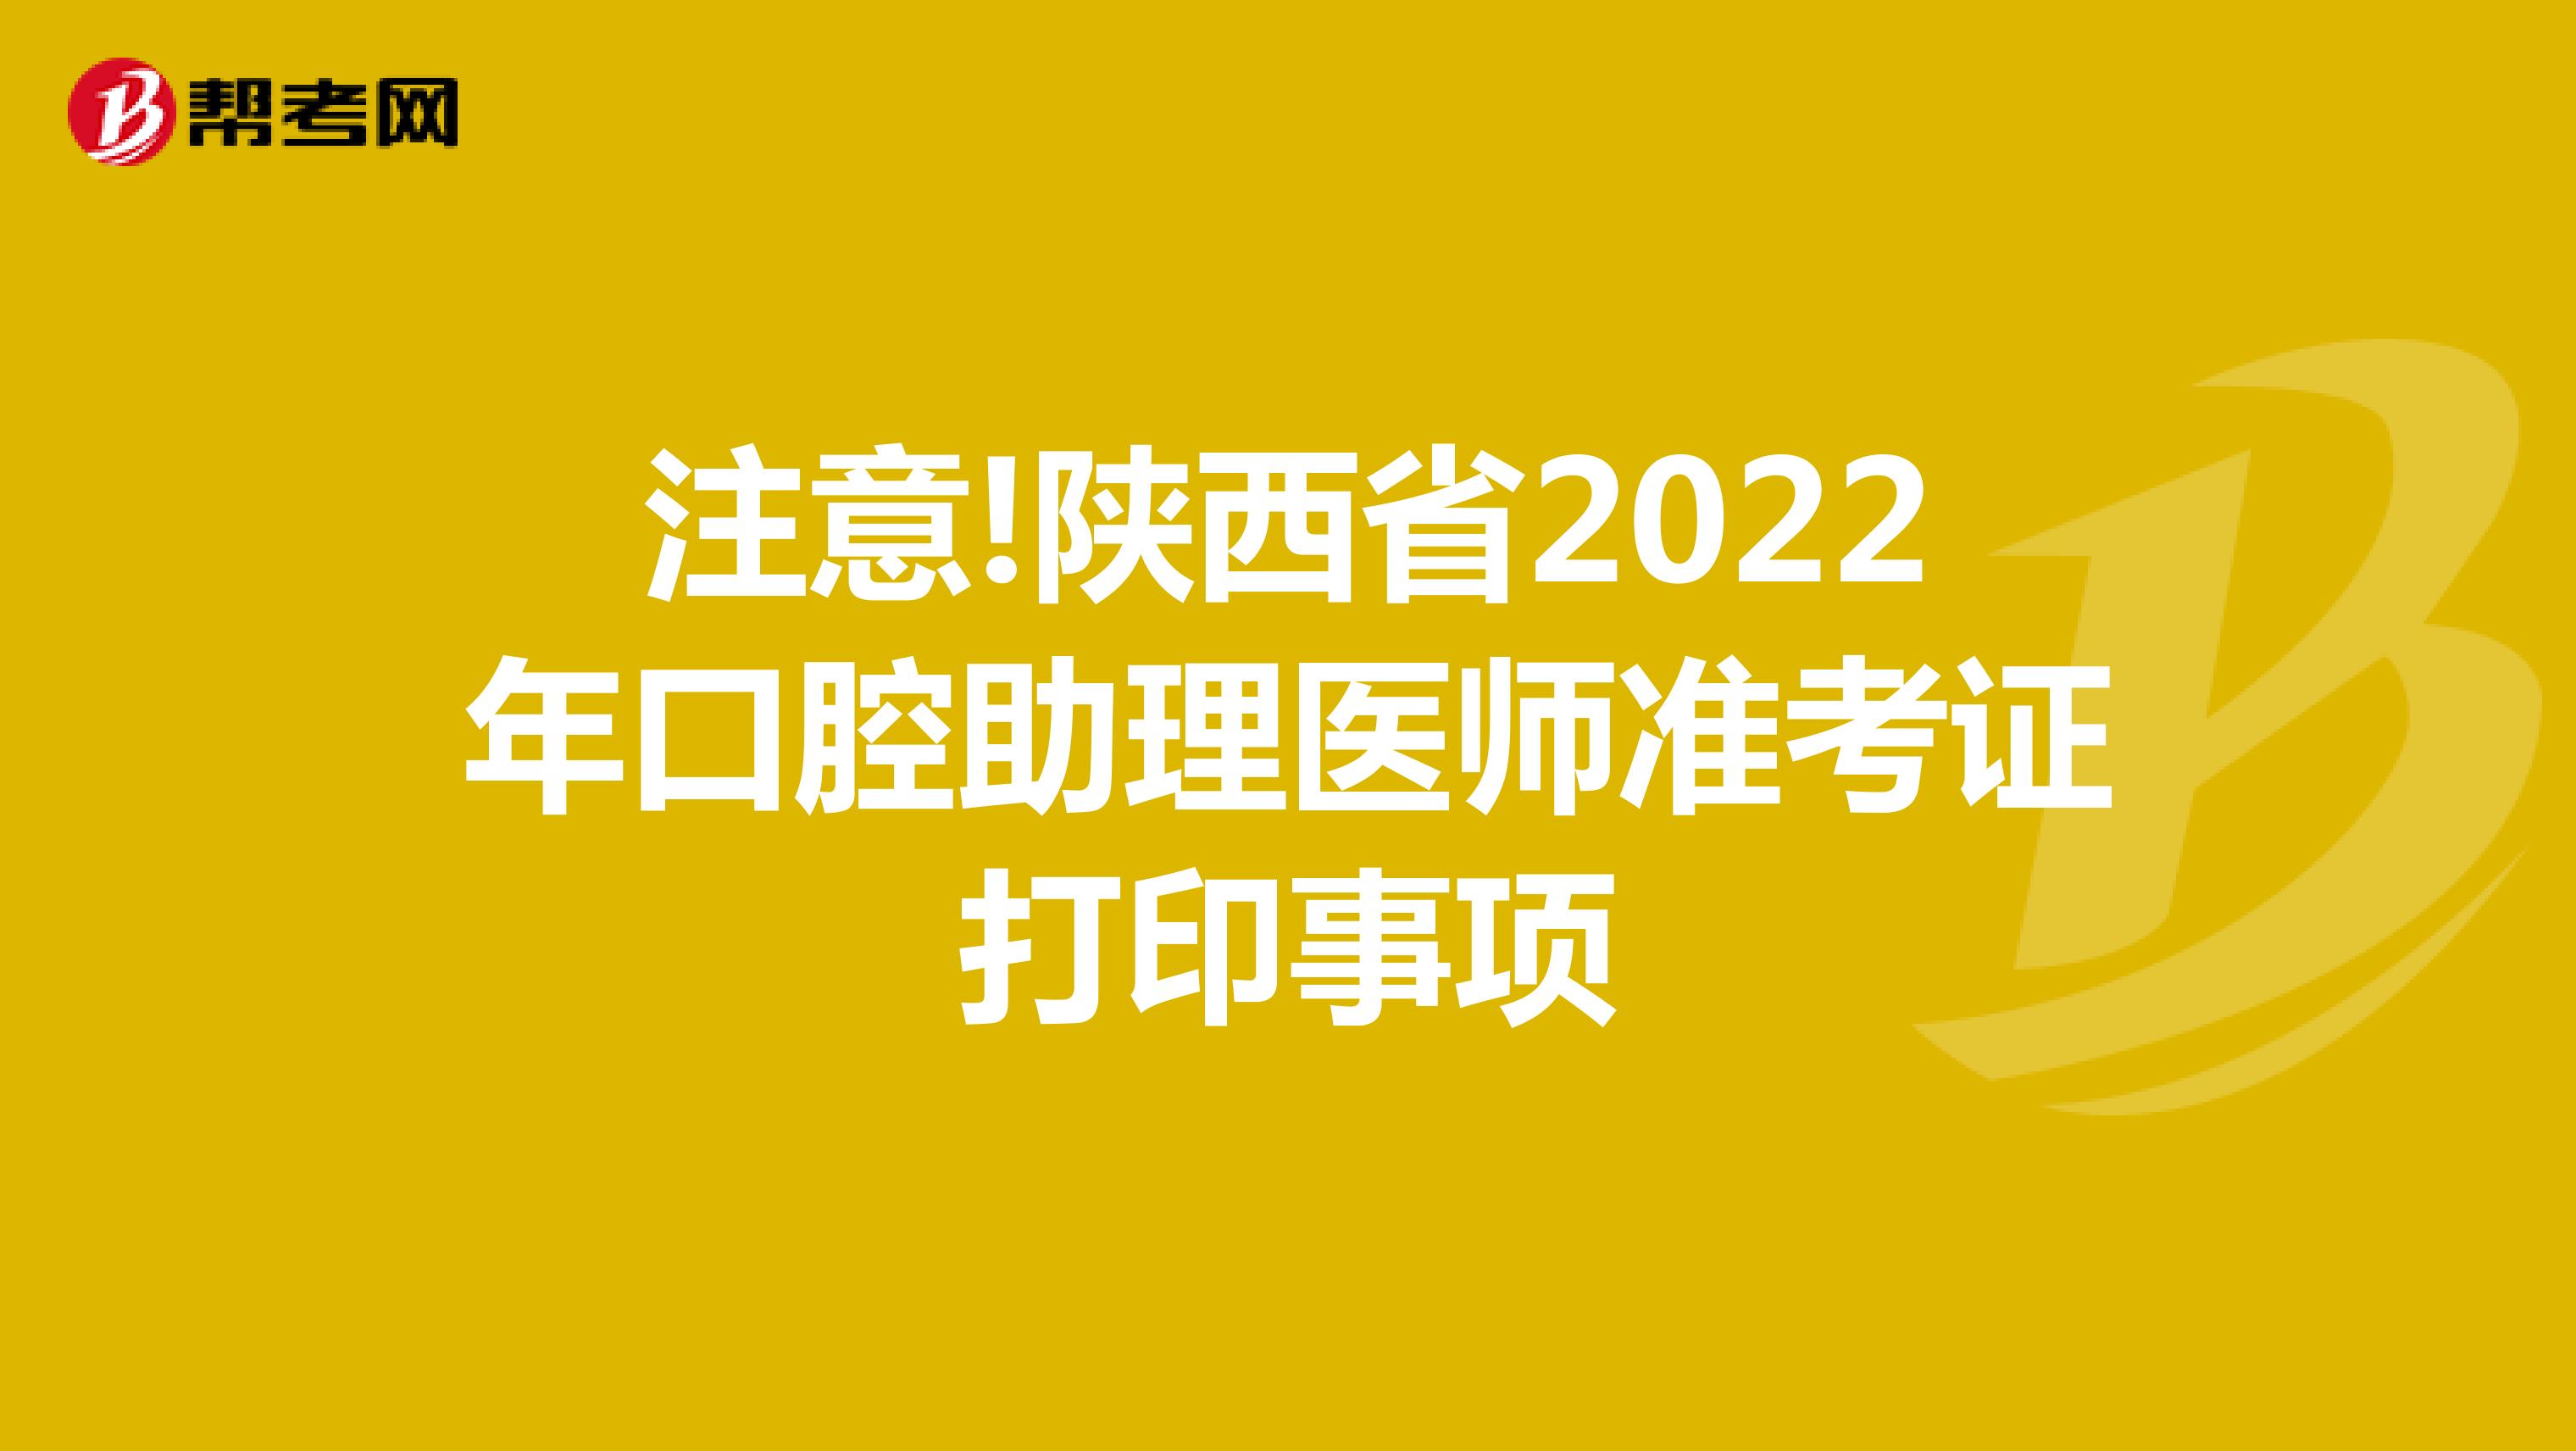 注意!陕西省2022年口腔助理医师准考证打印事项